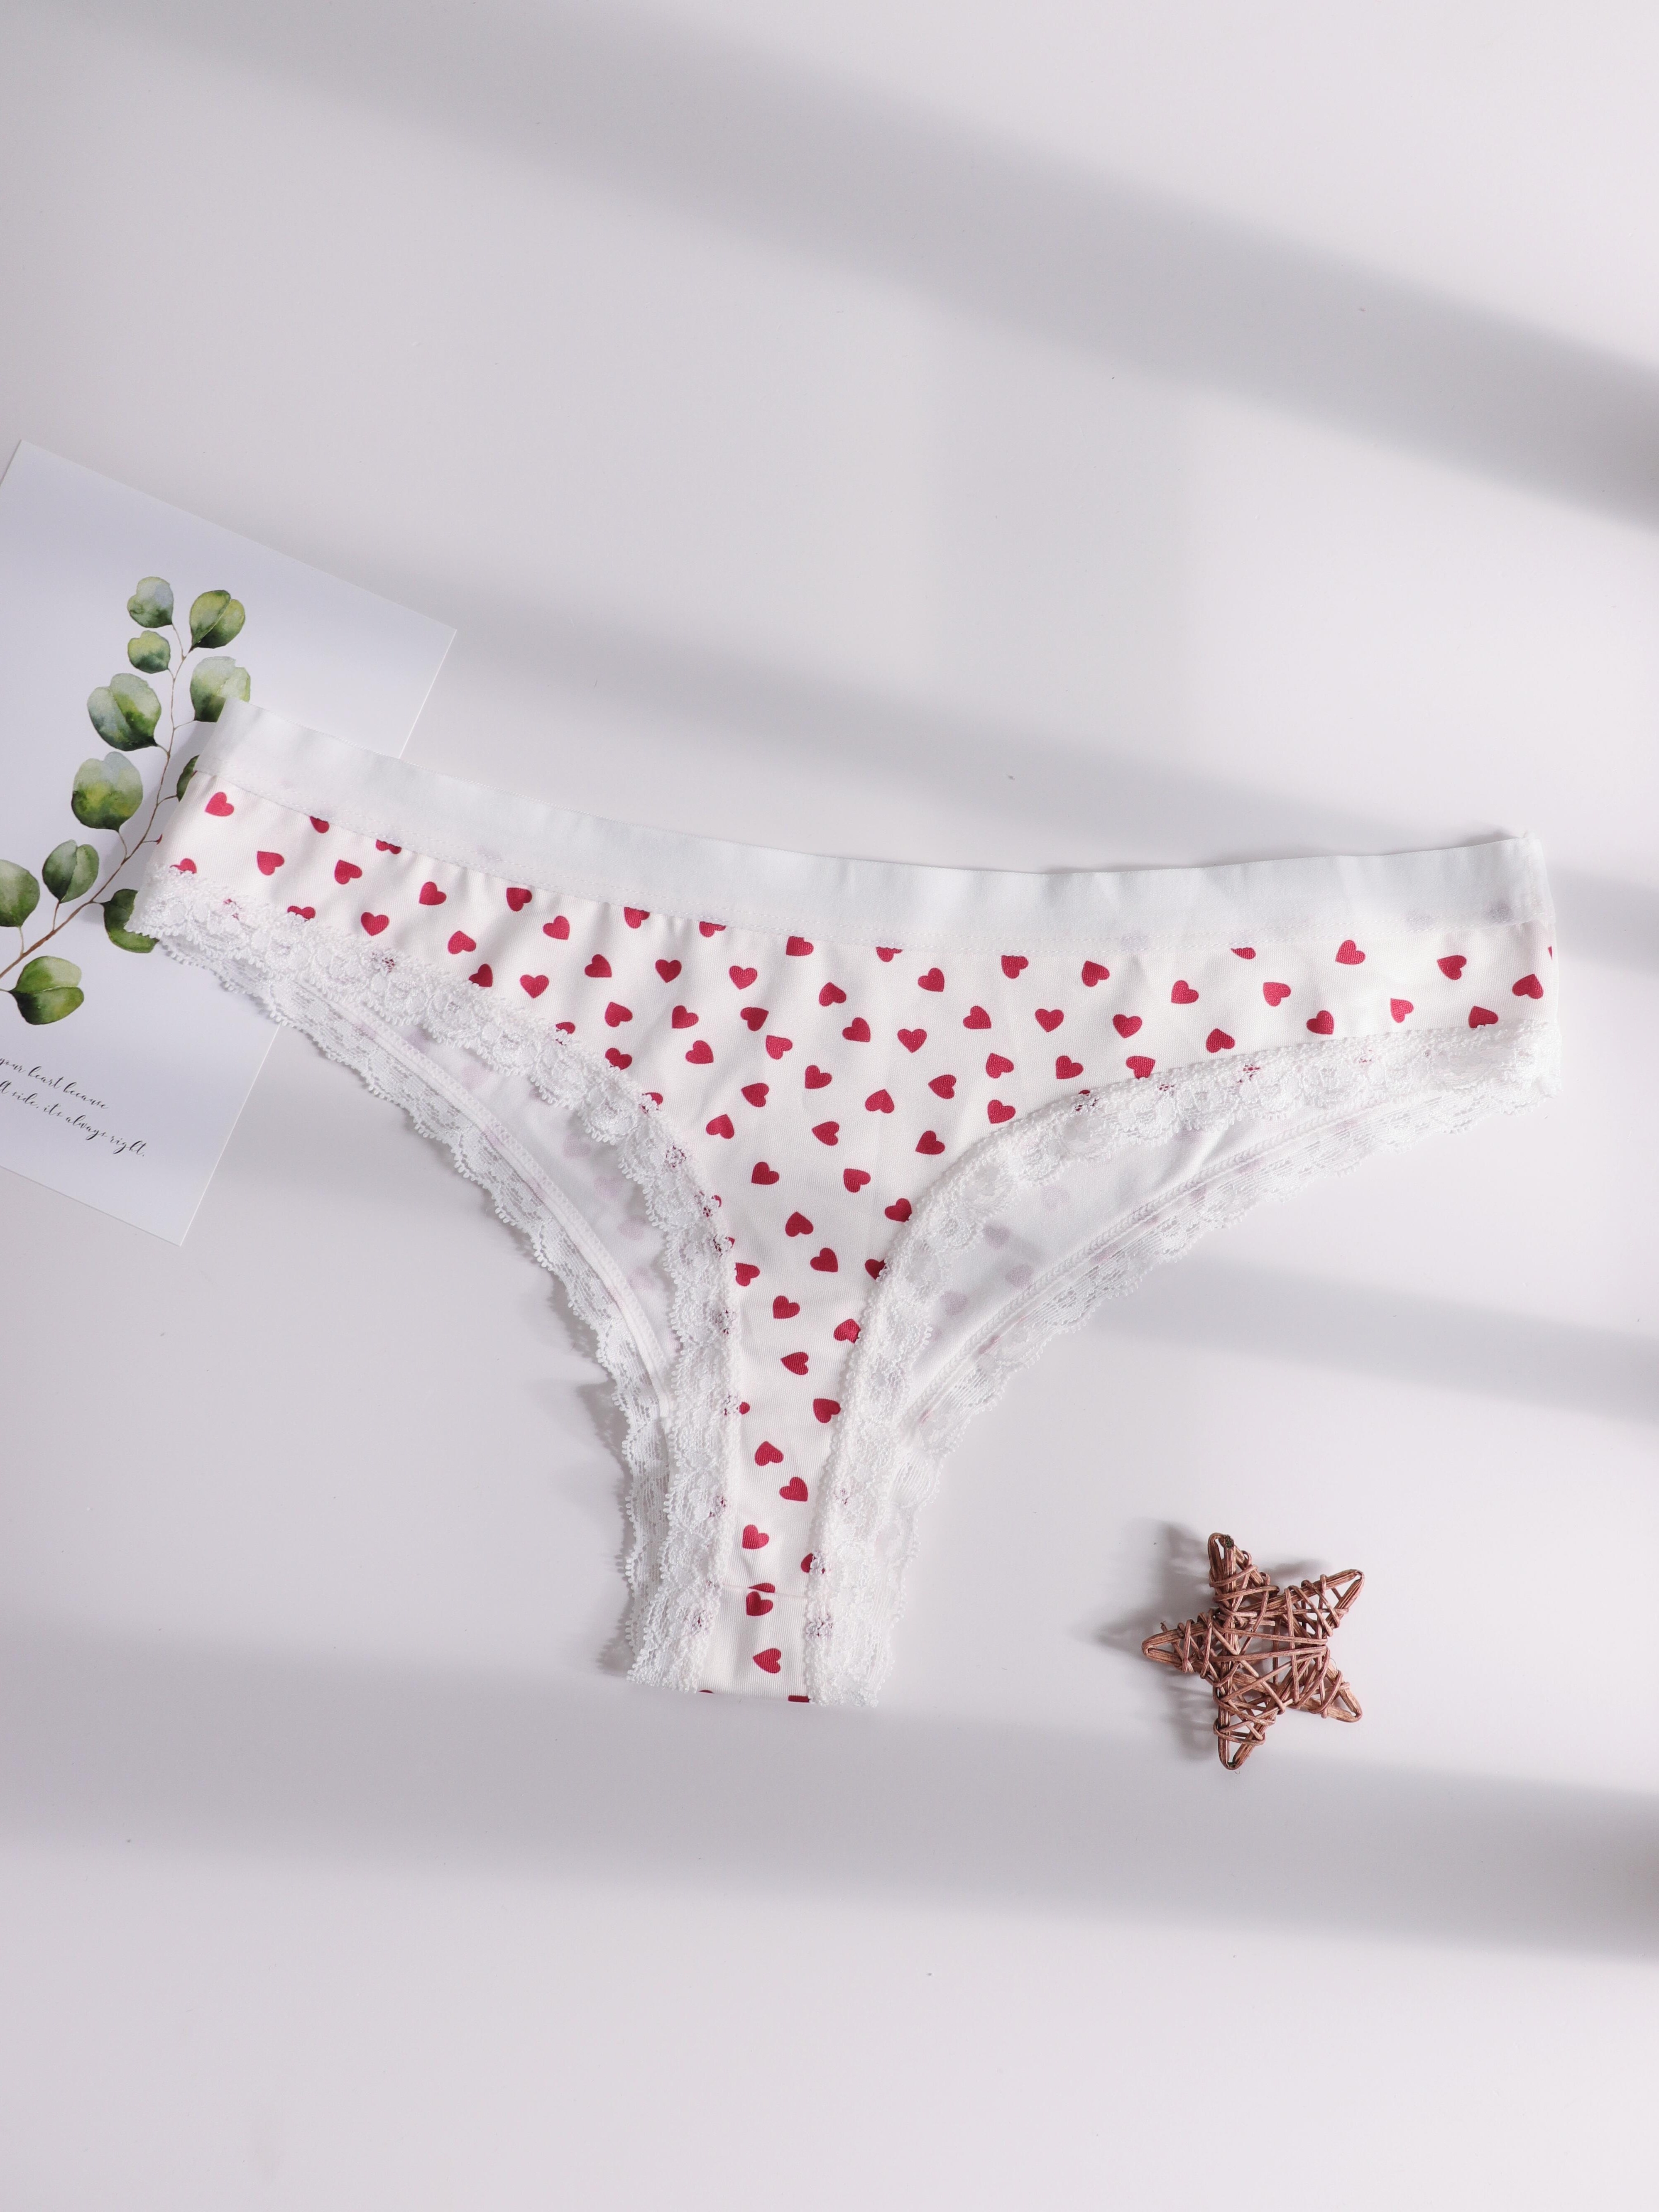 5pcs Heart & Fruit Print Thongs, Cute Comfy Lace Trim Intimates Panties,  Women's Lingerie & Underwear